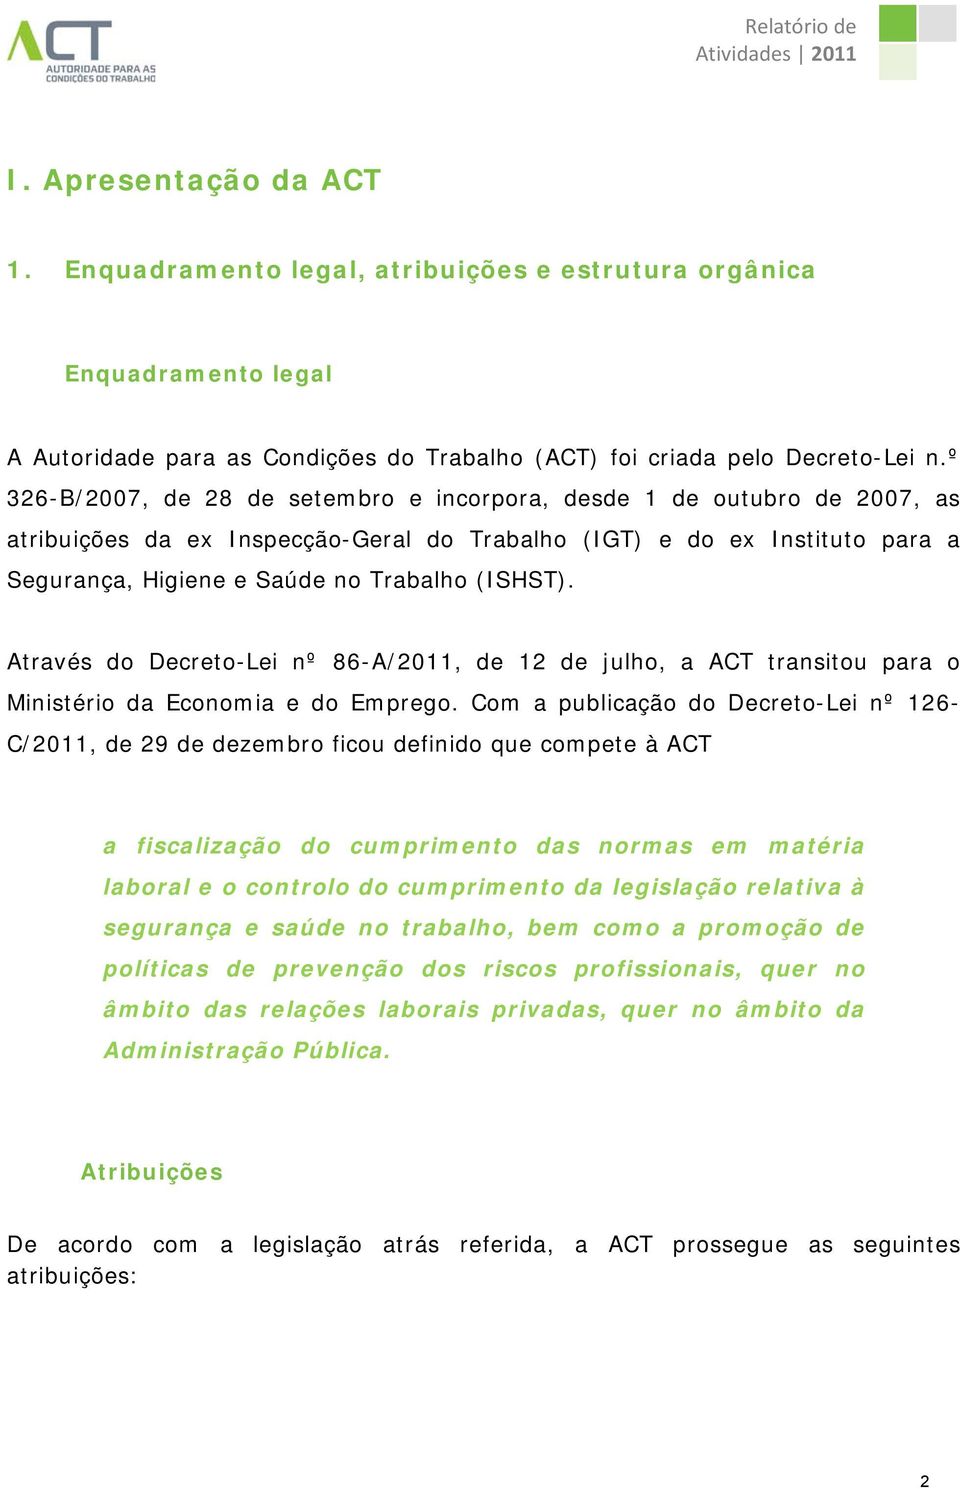 Através do Decreto-Lei nº 86-A/2011, de 12 de julho, a ACT transitou para o Ministério da Economia e do Emprego.